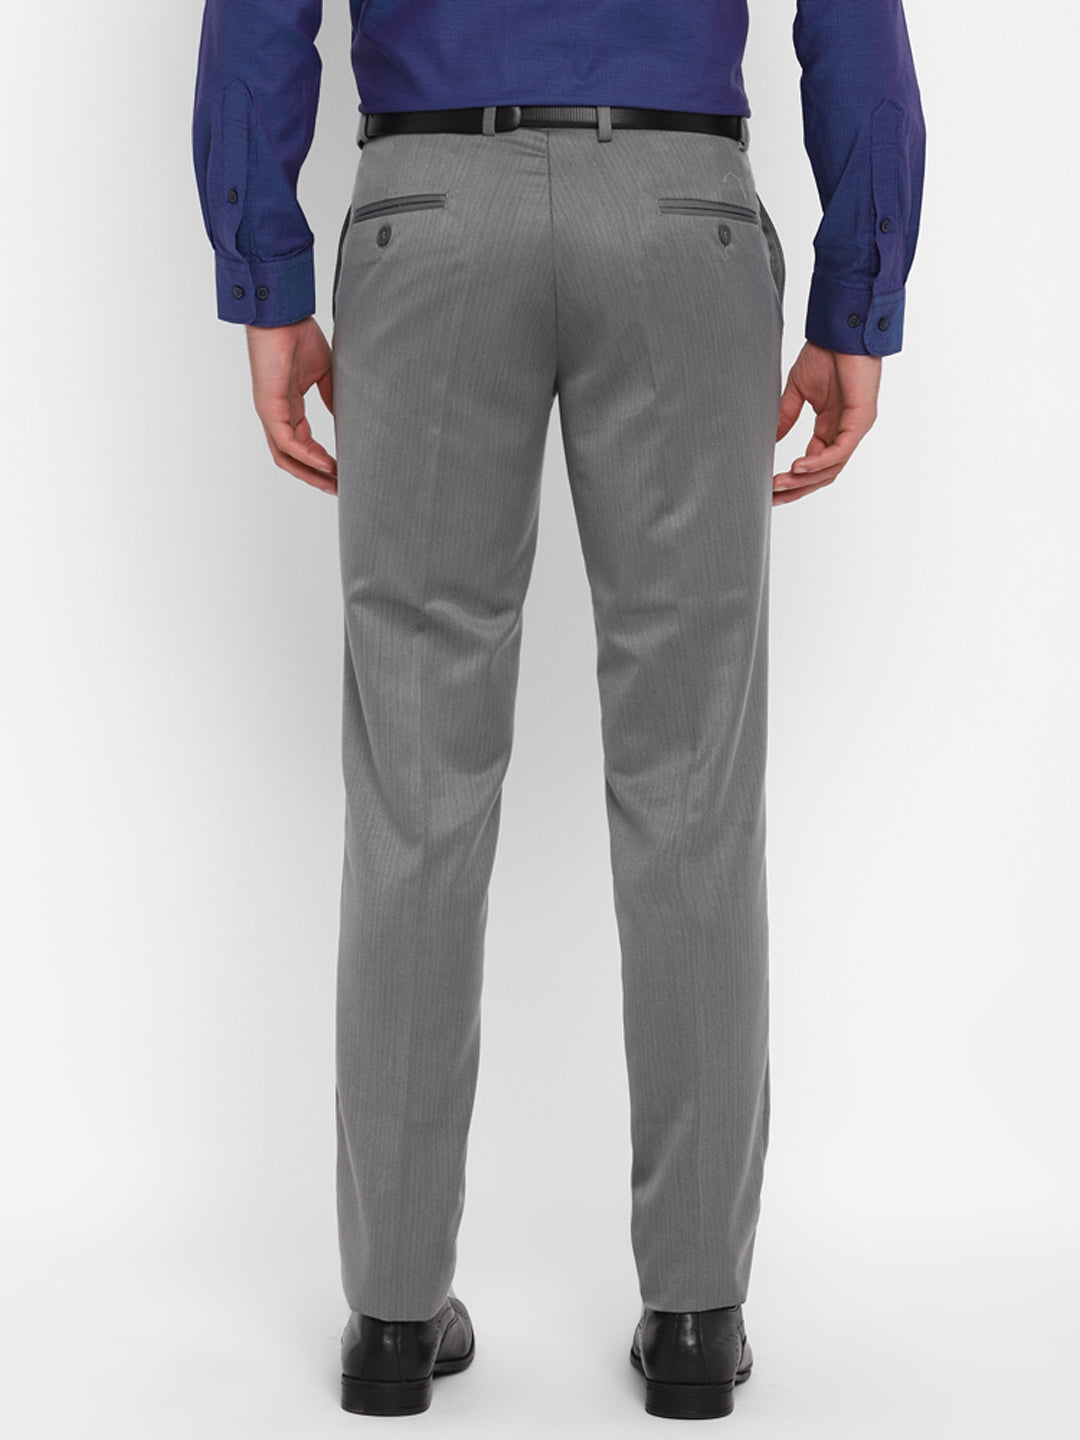 Grey Self Design Slim Fit Trouser